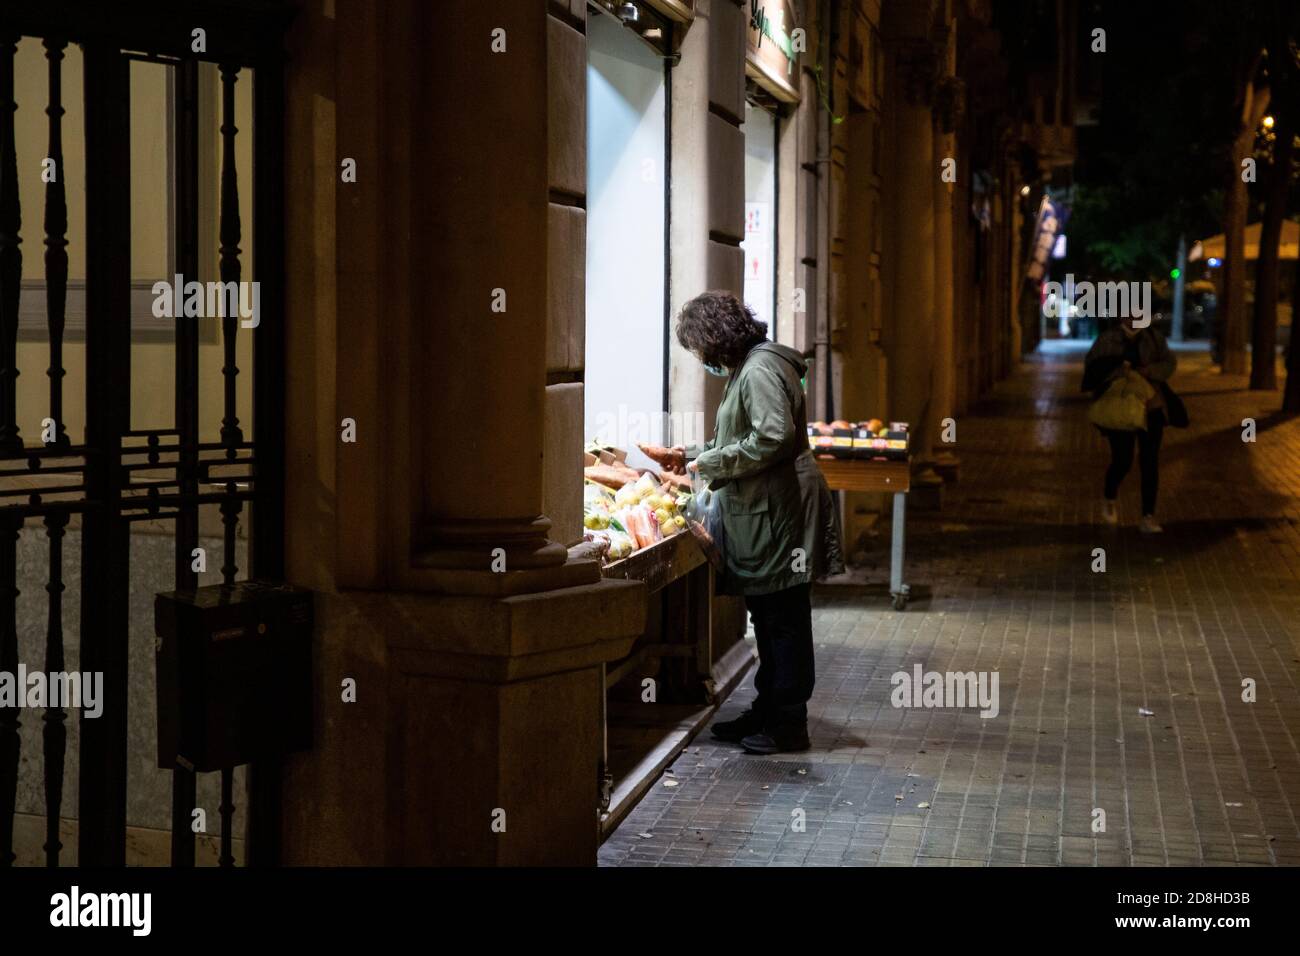 Barcelona, España. 2020.10.29. Una mujer hace las compras en una tienda fuera de las horas establecidas para el cierre de tiendas según el toque de queda. Foto de stock